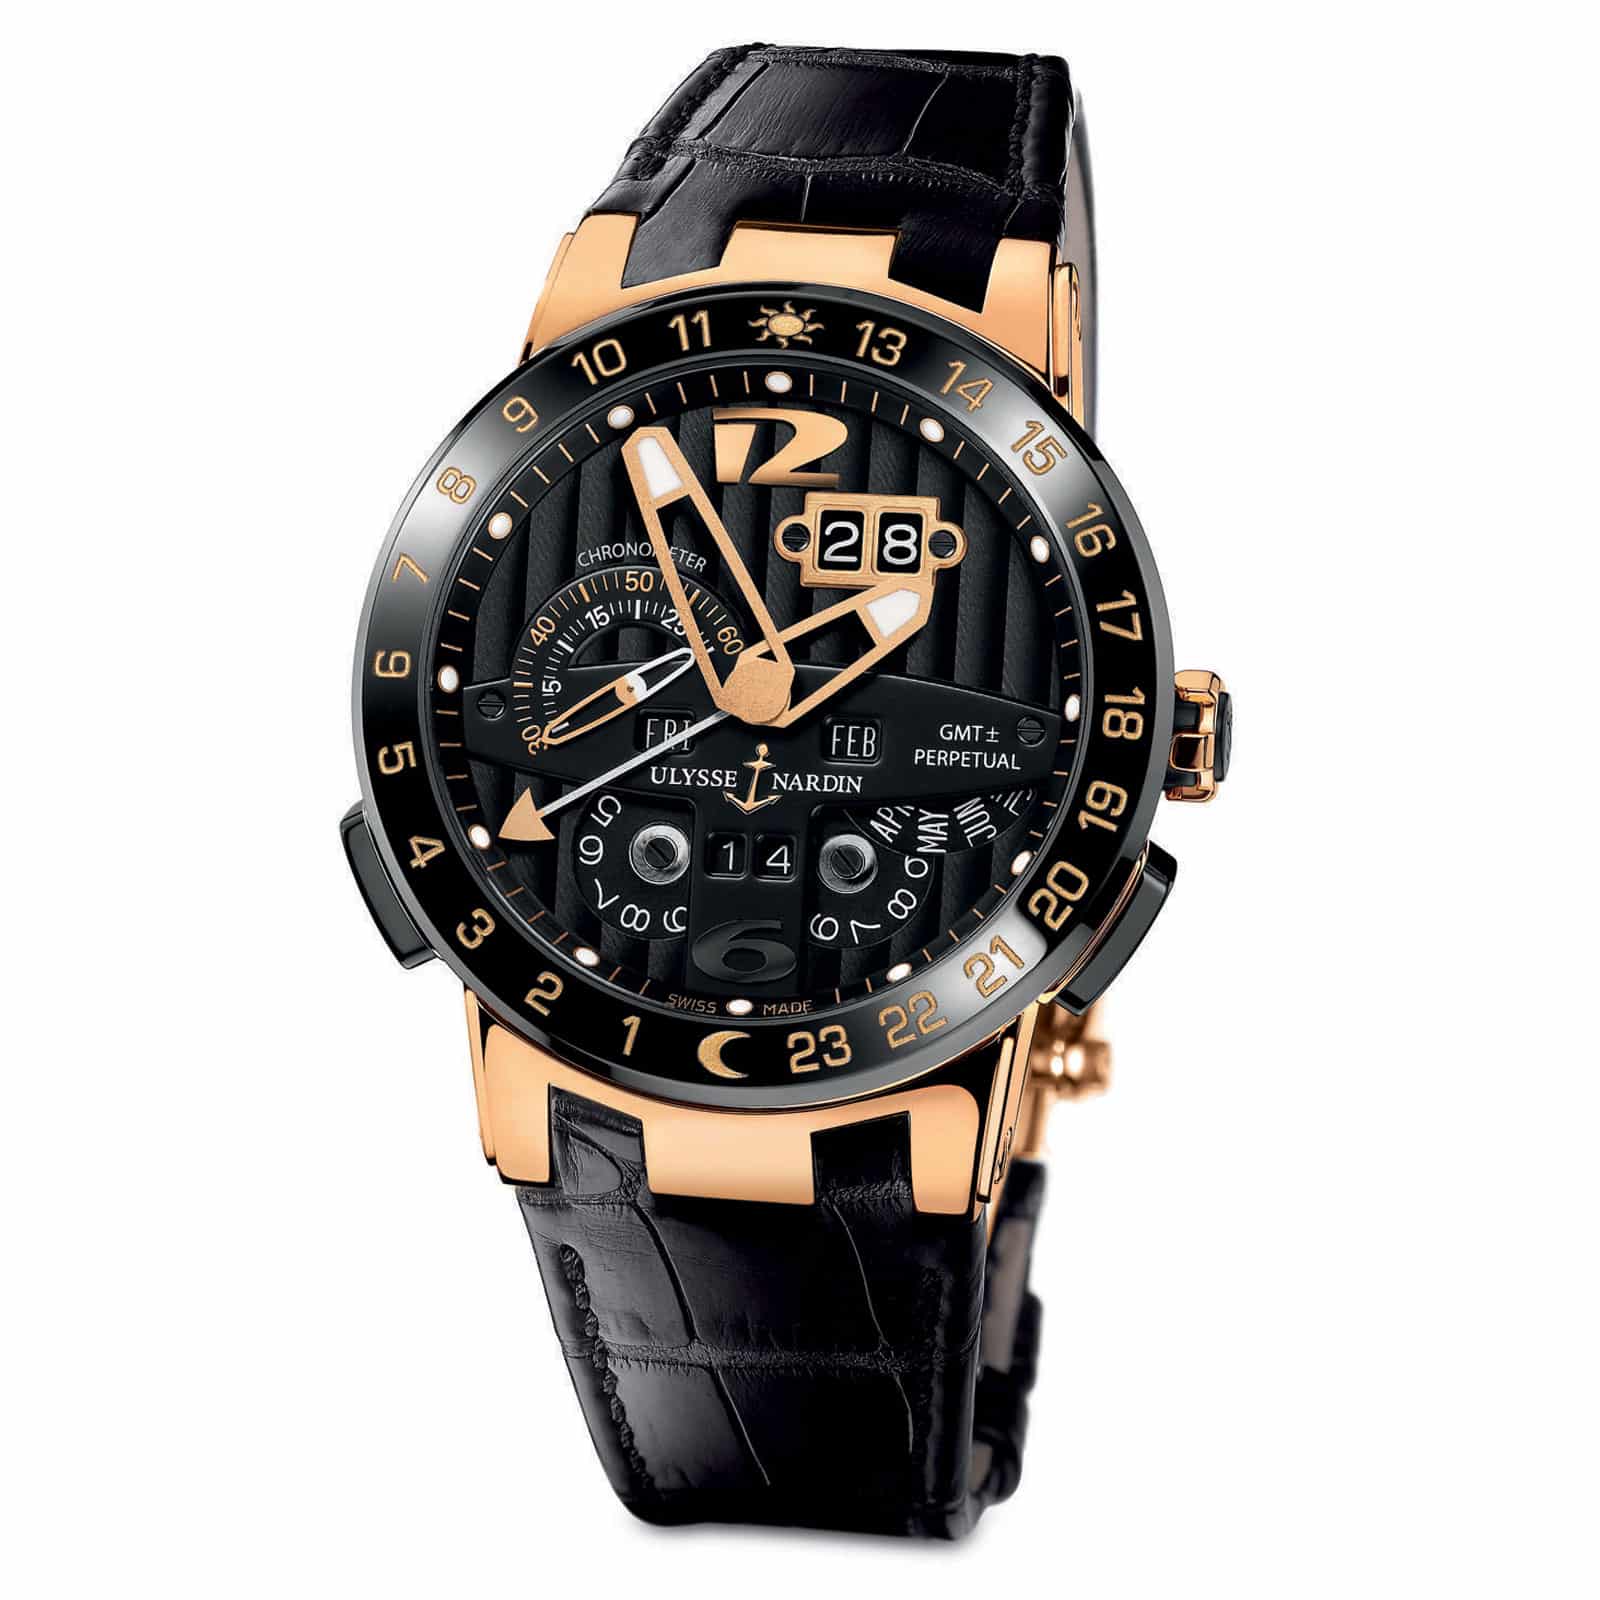 Купить часы оригинал бу. Часы Улисс Нордин Toro. Часы Ulysse Nardin el Toro GMT Perpetual. Ulysse Nardin 500 Limited. Часы швейцарские мужские Улисс Нордин.